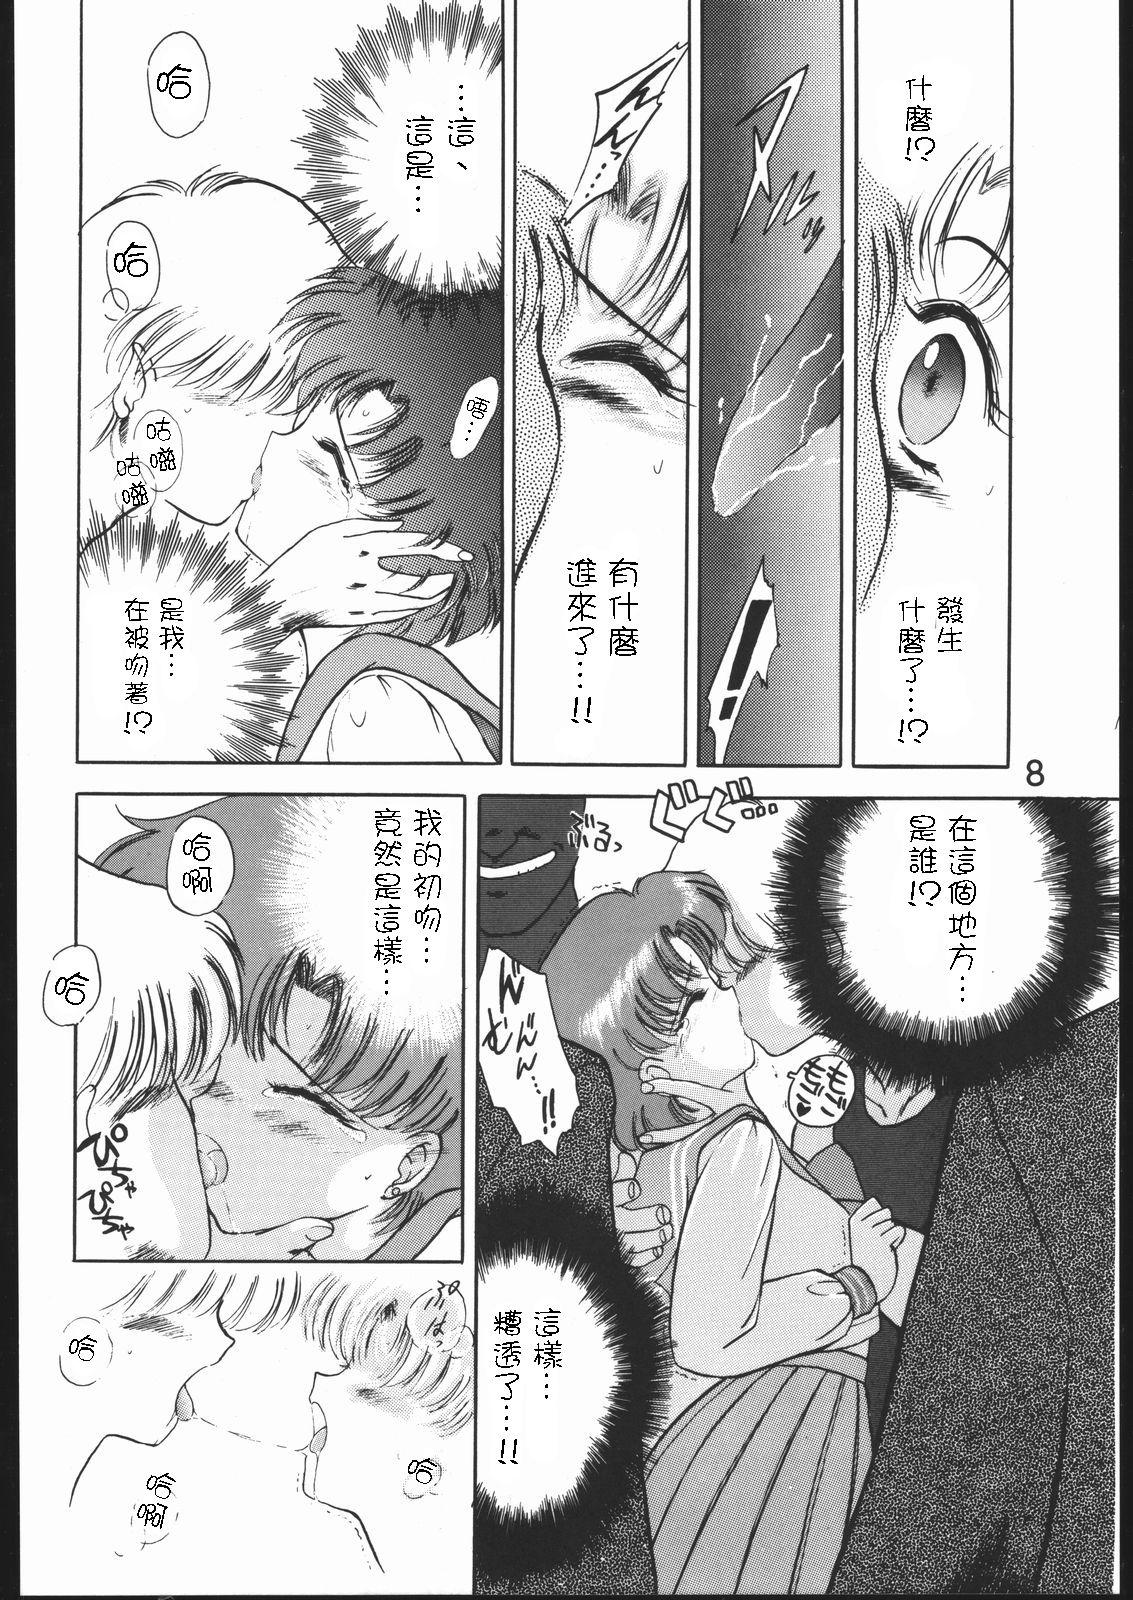 Milf SUBMISSION MERCURY PLUS - Sailor moon Uncut - Page 8